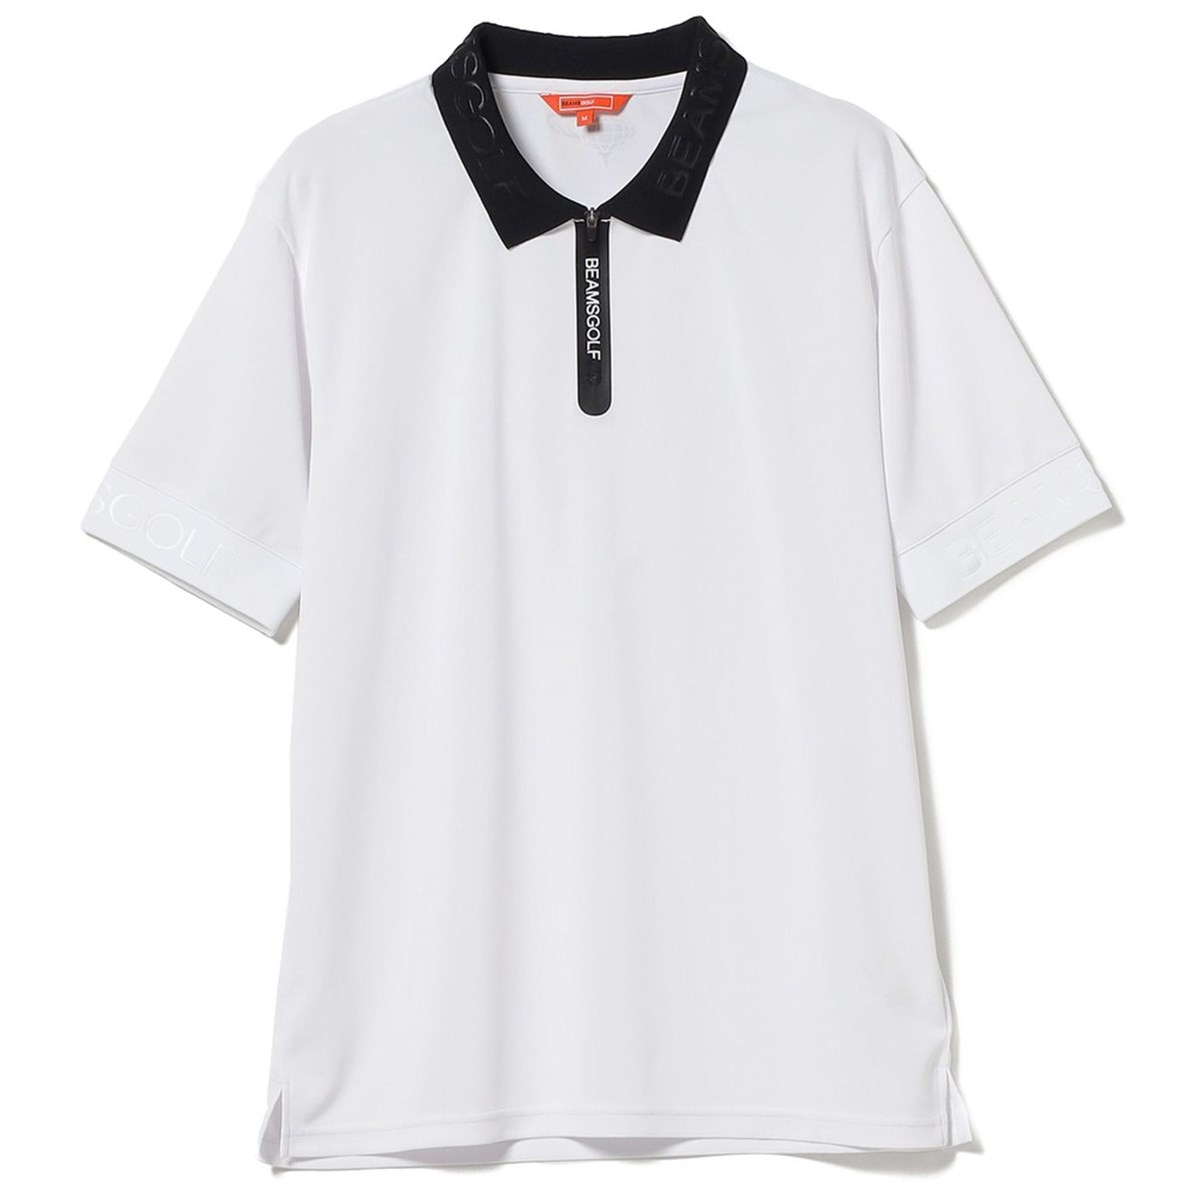 BEAMS GOLF ORANGE LABEL エンボスロゴ ハーフジップポロシャツ(ポロシャツ)